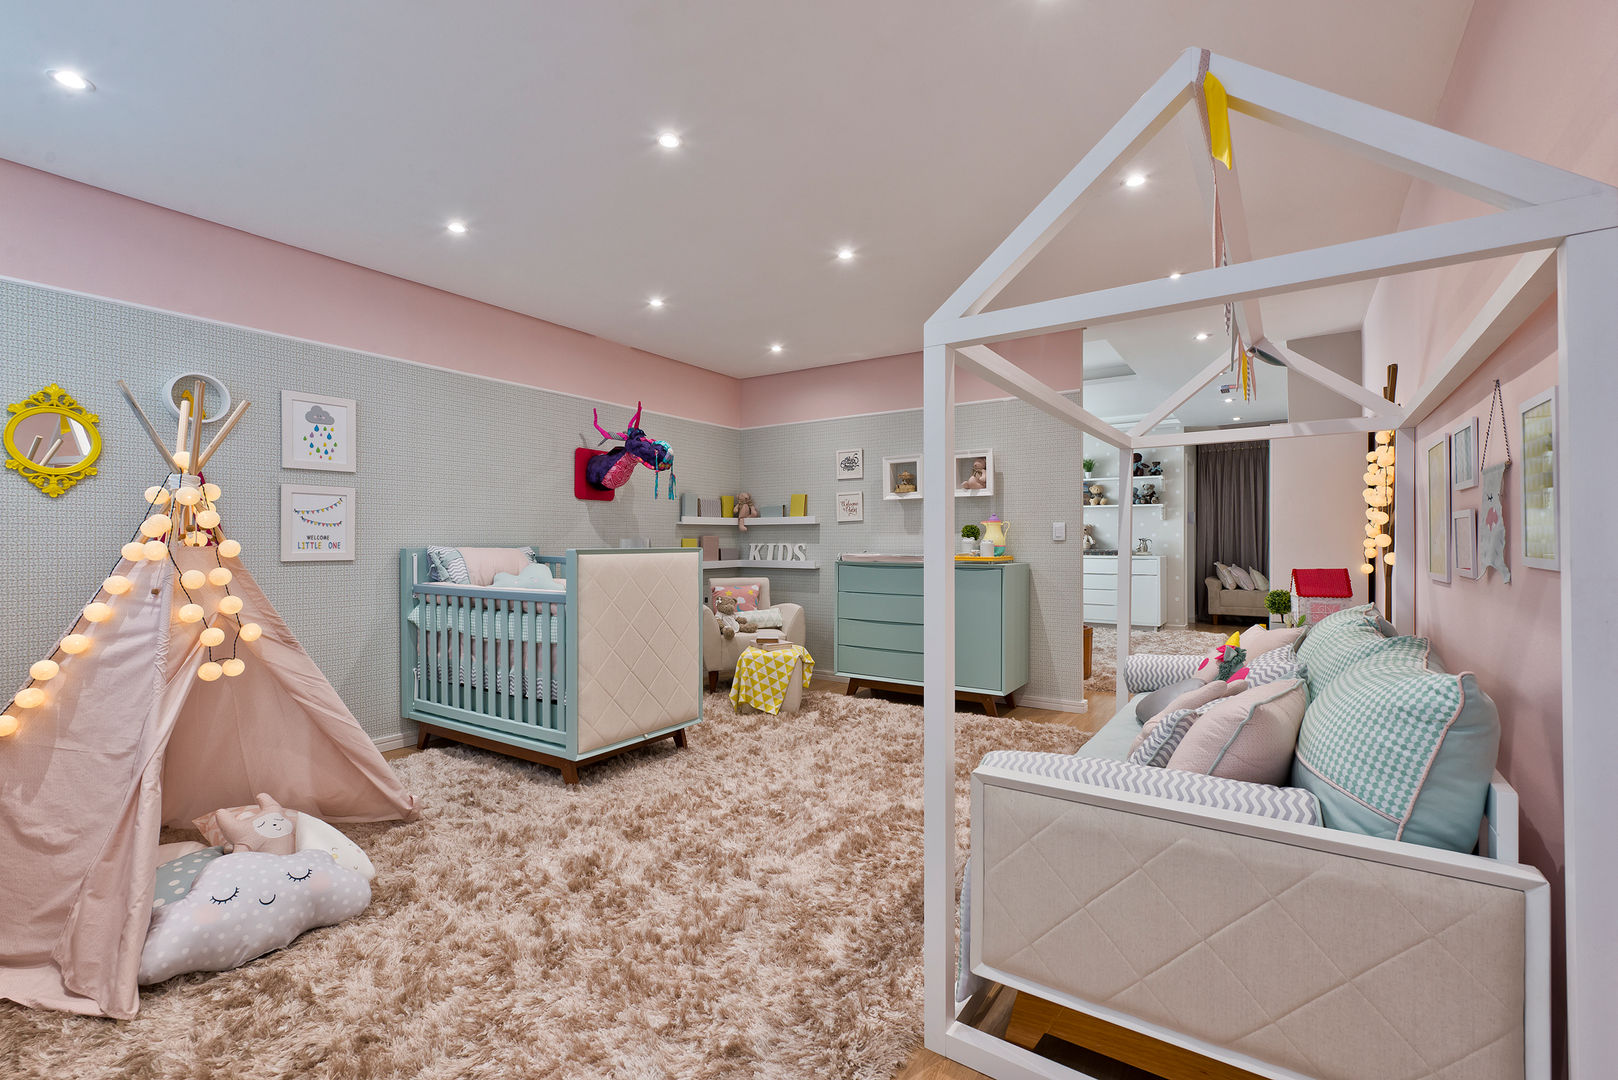 Quarto de menina moderninho, KIDS Arquitetura para pequenos KIDS Arquitetura para pequenos Modern nursery/kids room